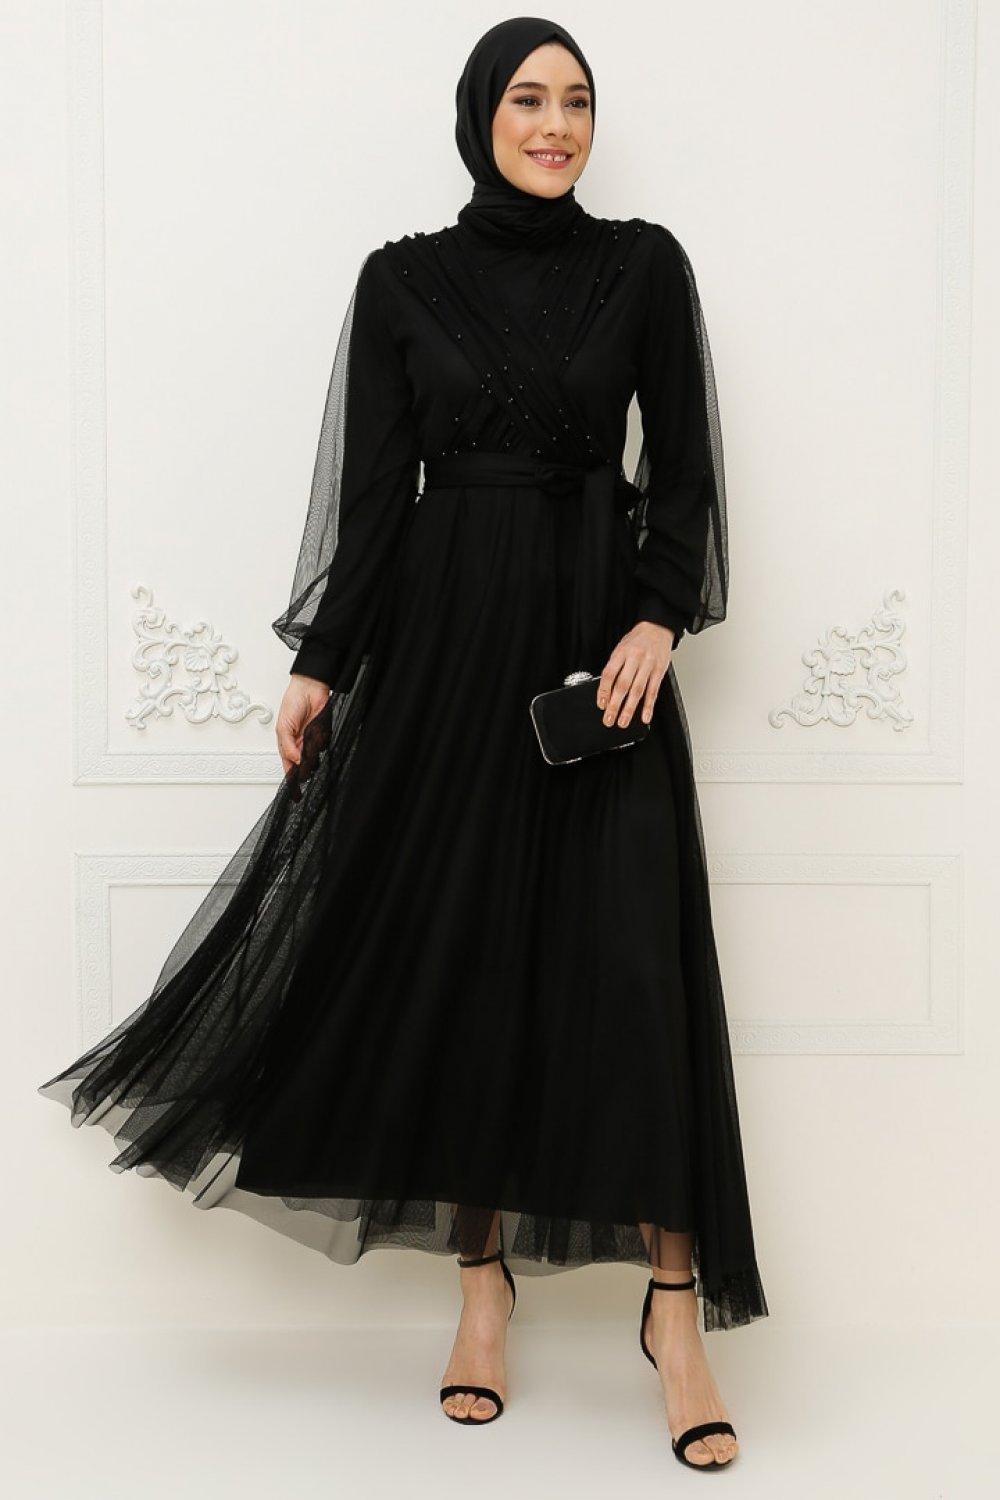 Müteahhit ikna etmek teslim  BÜRÜN Siyah Tül Detaylı Abiye Elbise | ElbiseBul